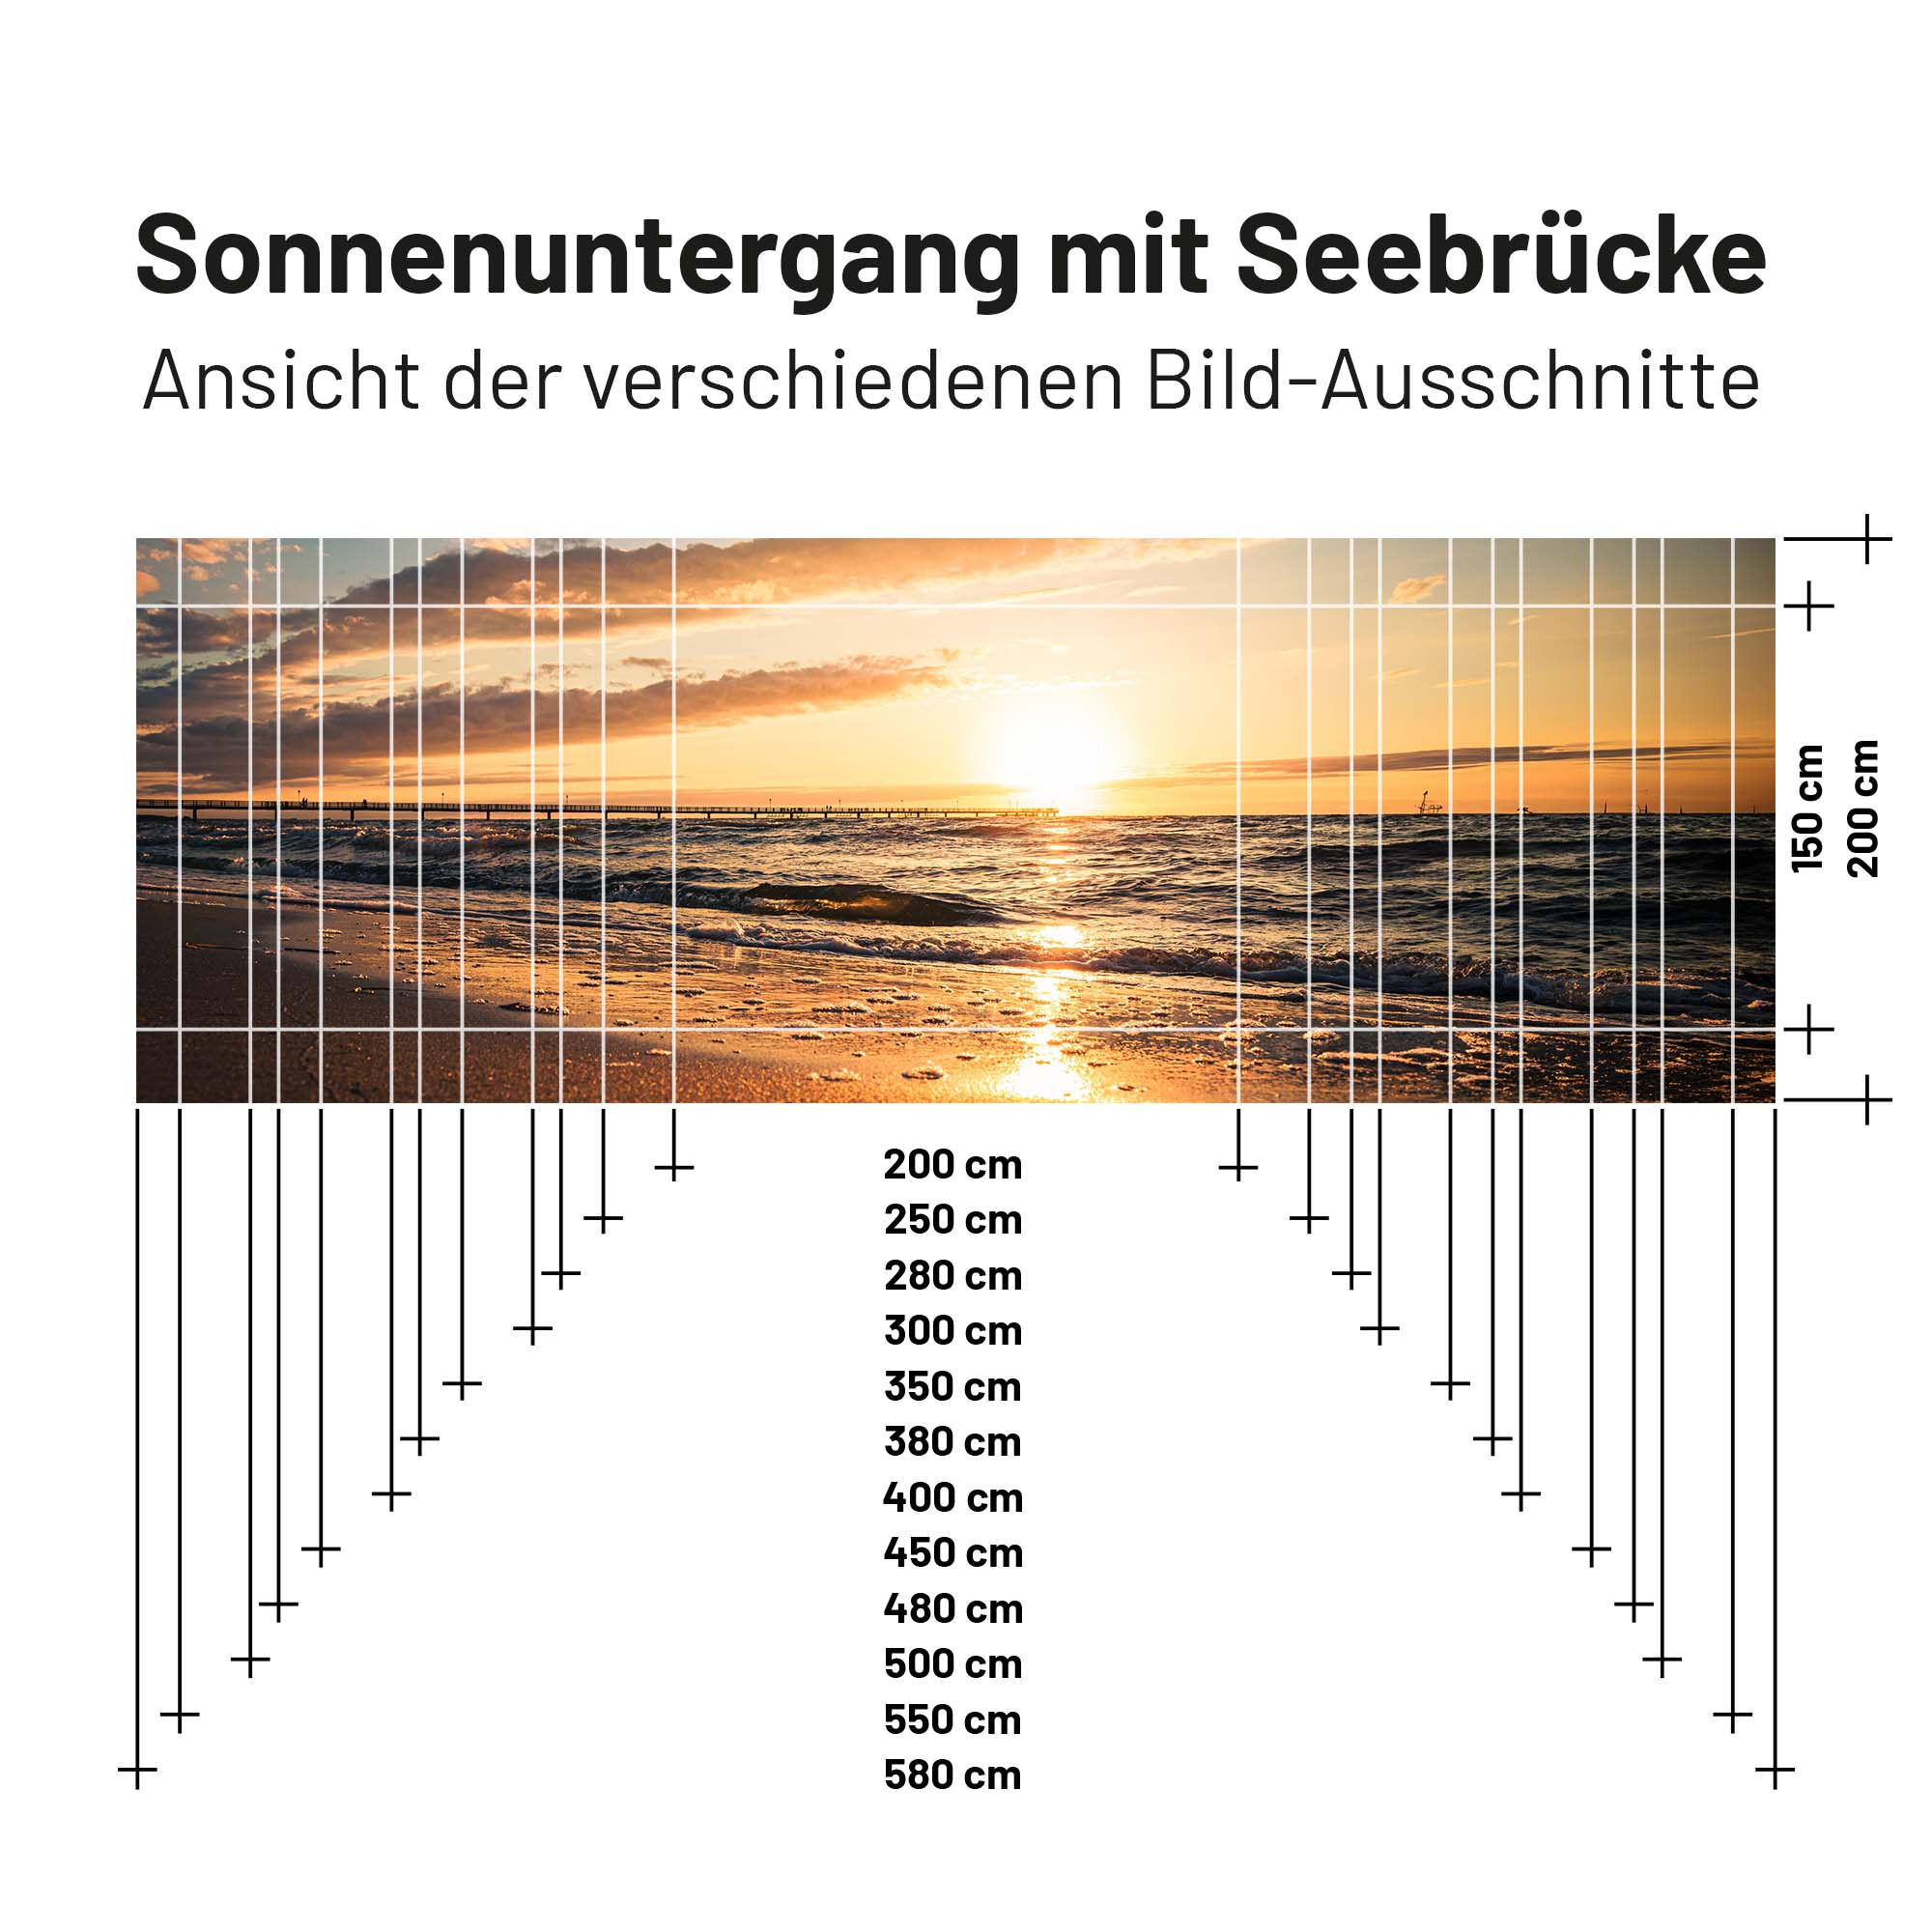 Textil Sonnensegel SONNENUNTERGANG MIT SEEBRÜCKE 150cm Hoch